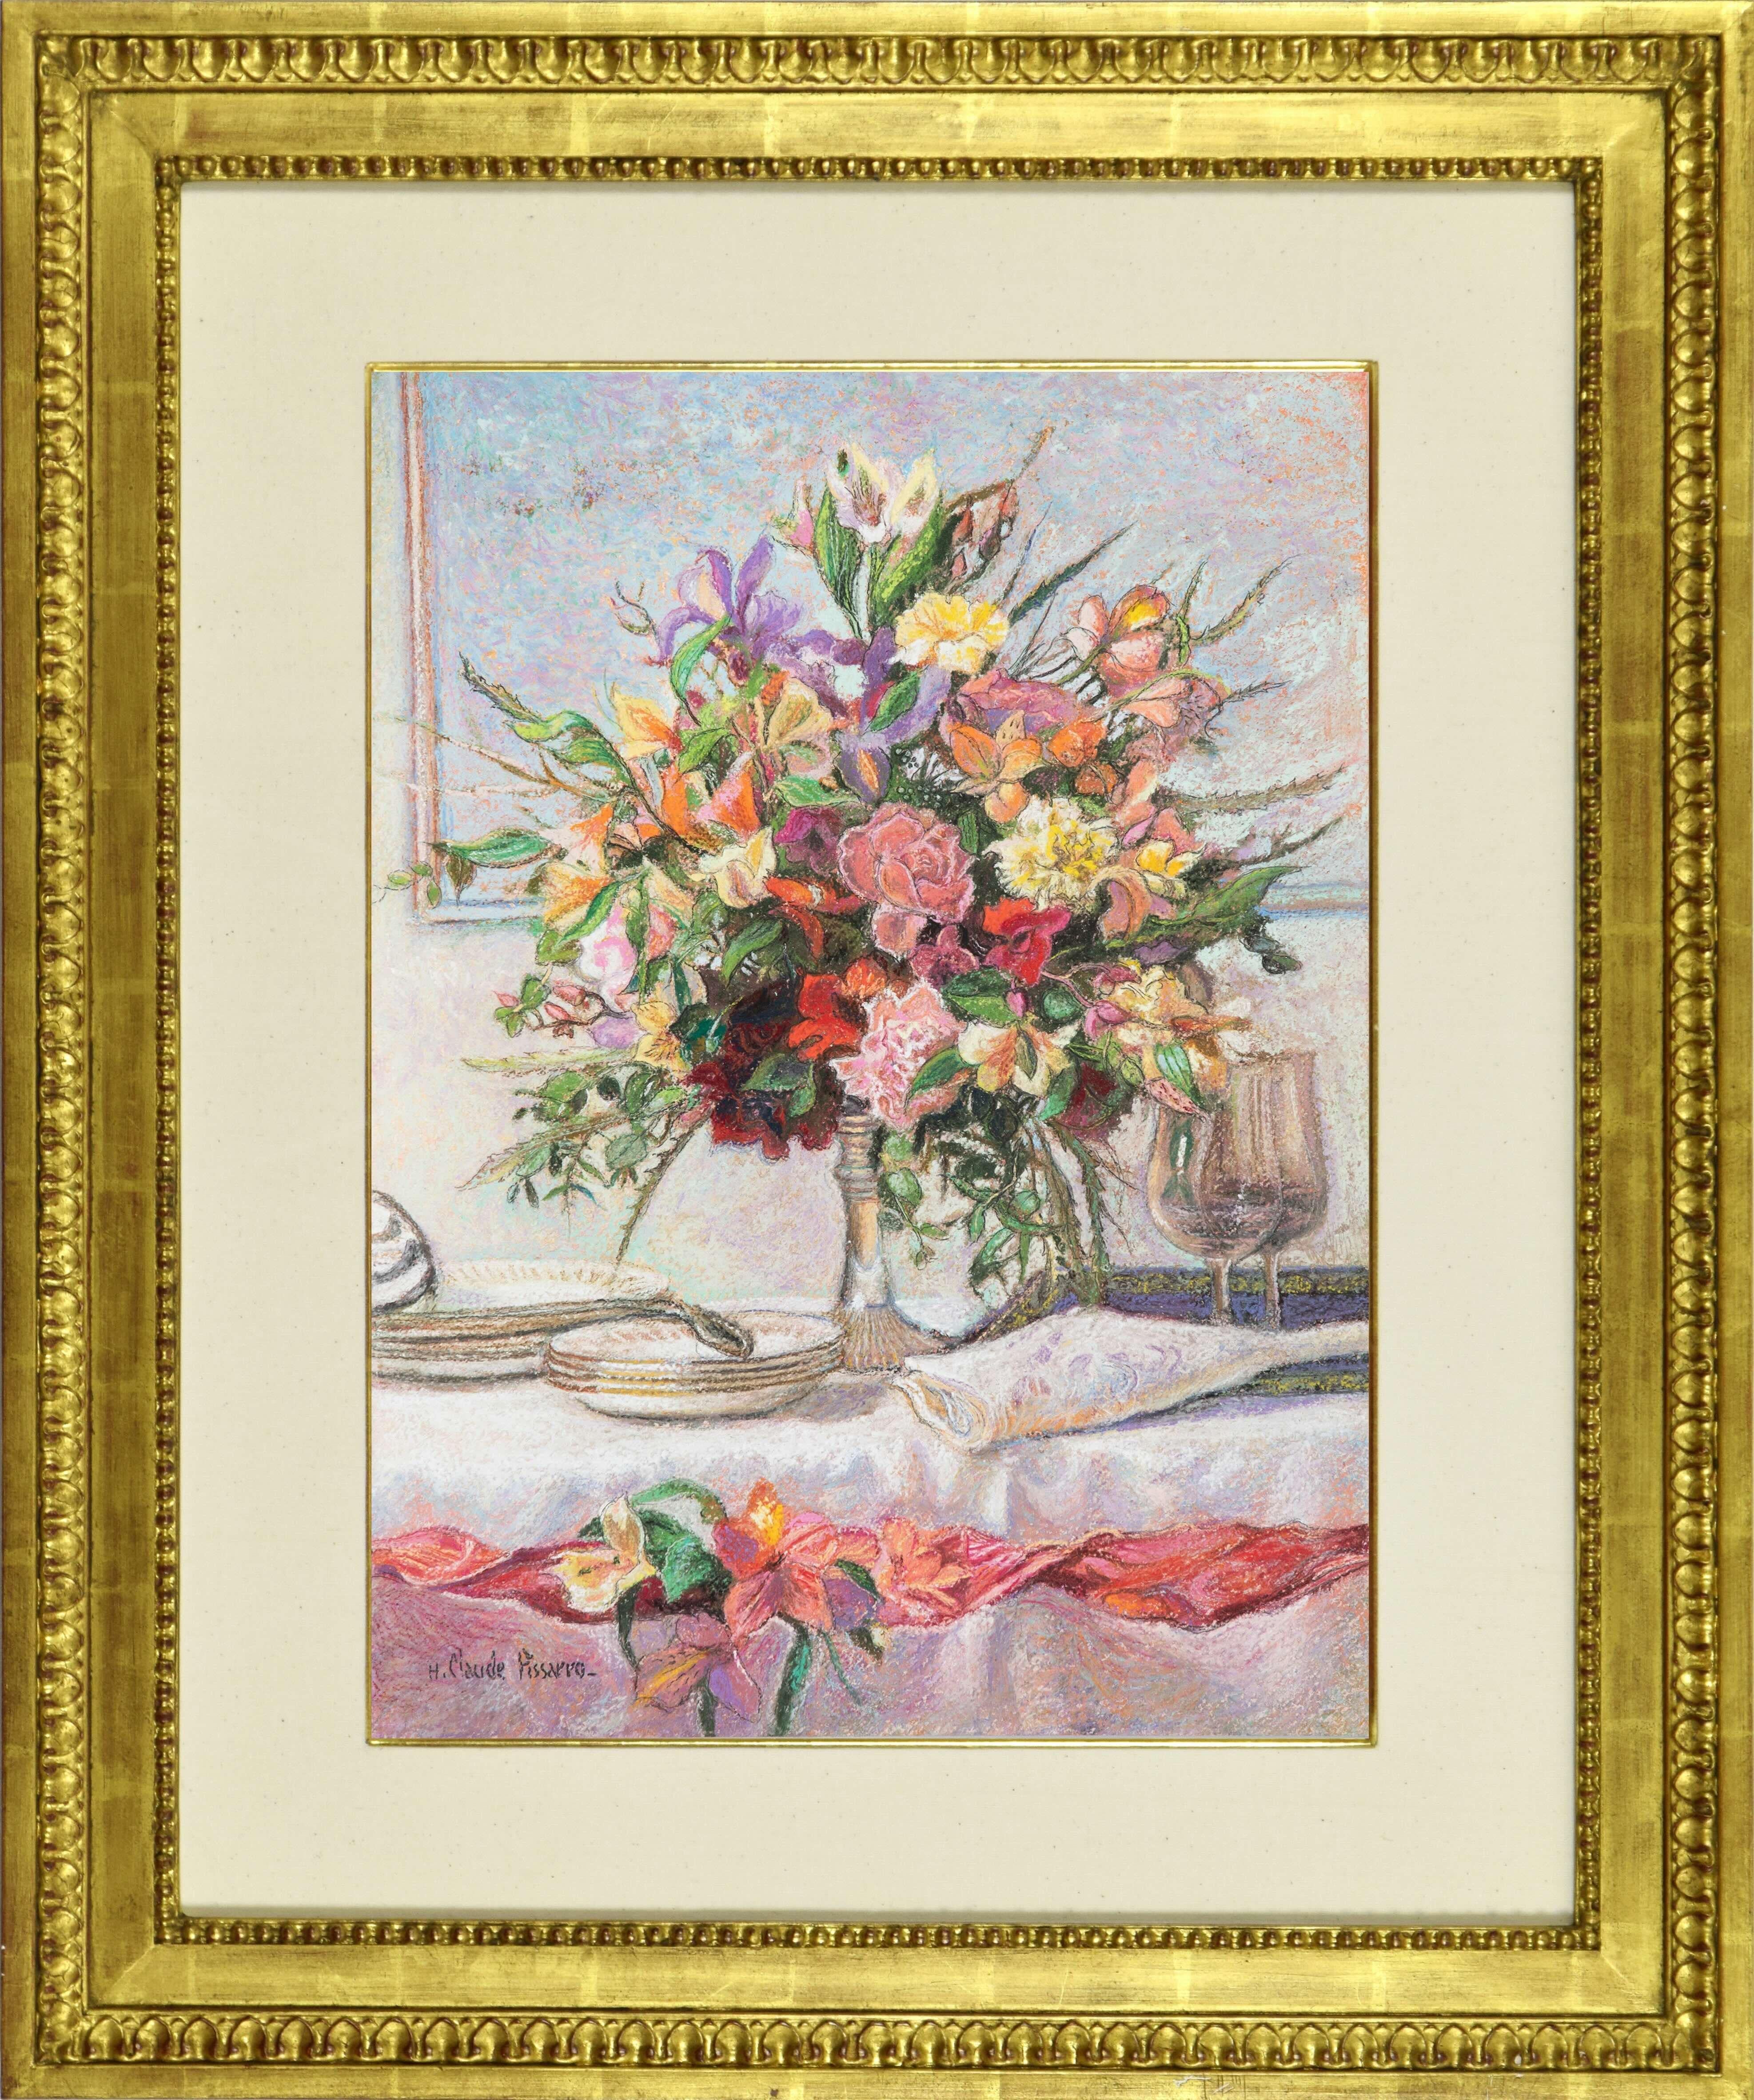 Bouquet pour le dîner by H. Claude Pissarro - Still Life, pastel on card - Post-Impressionist Art by Hughes Claude Pissarro